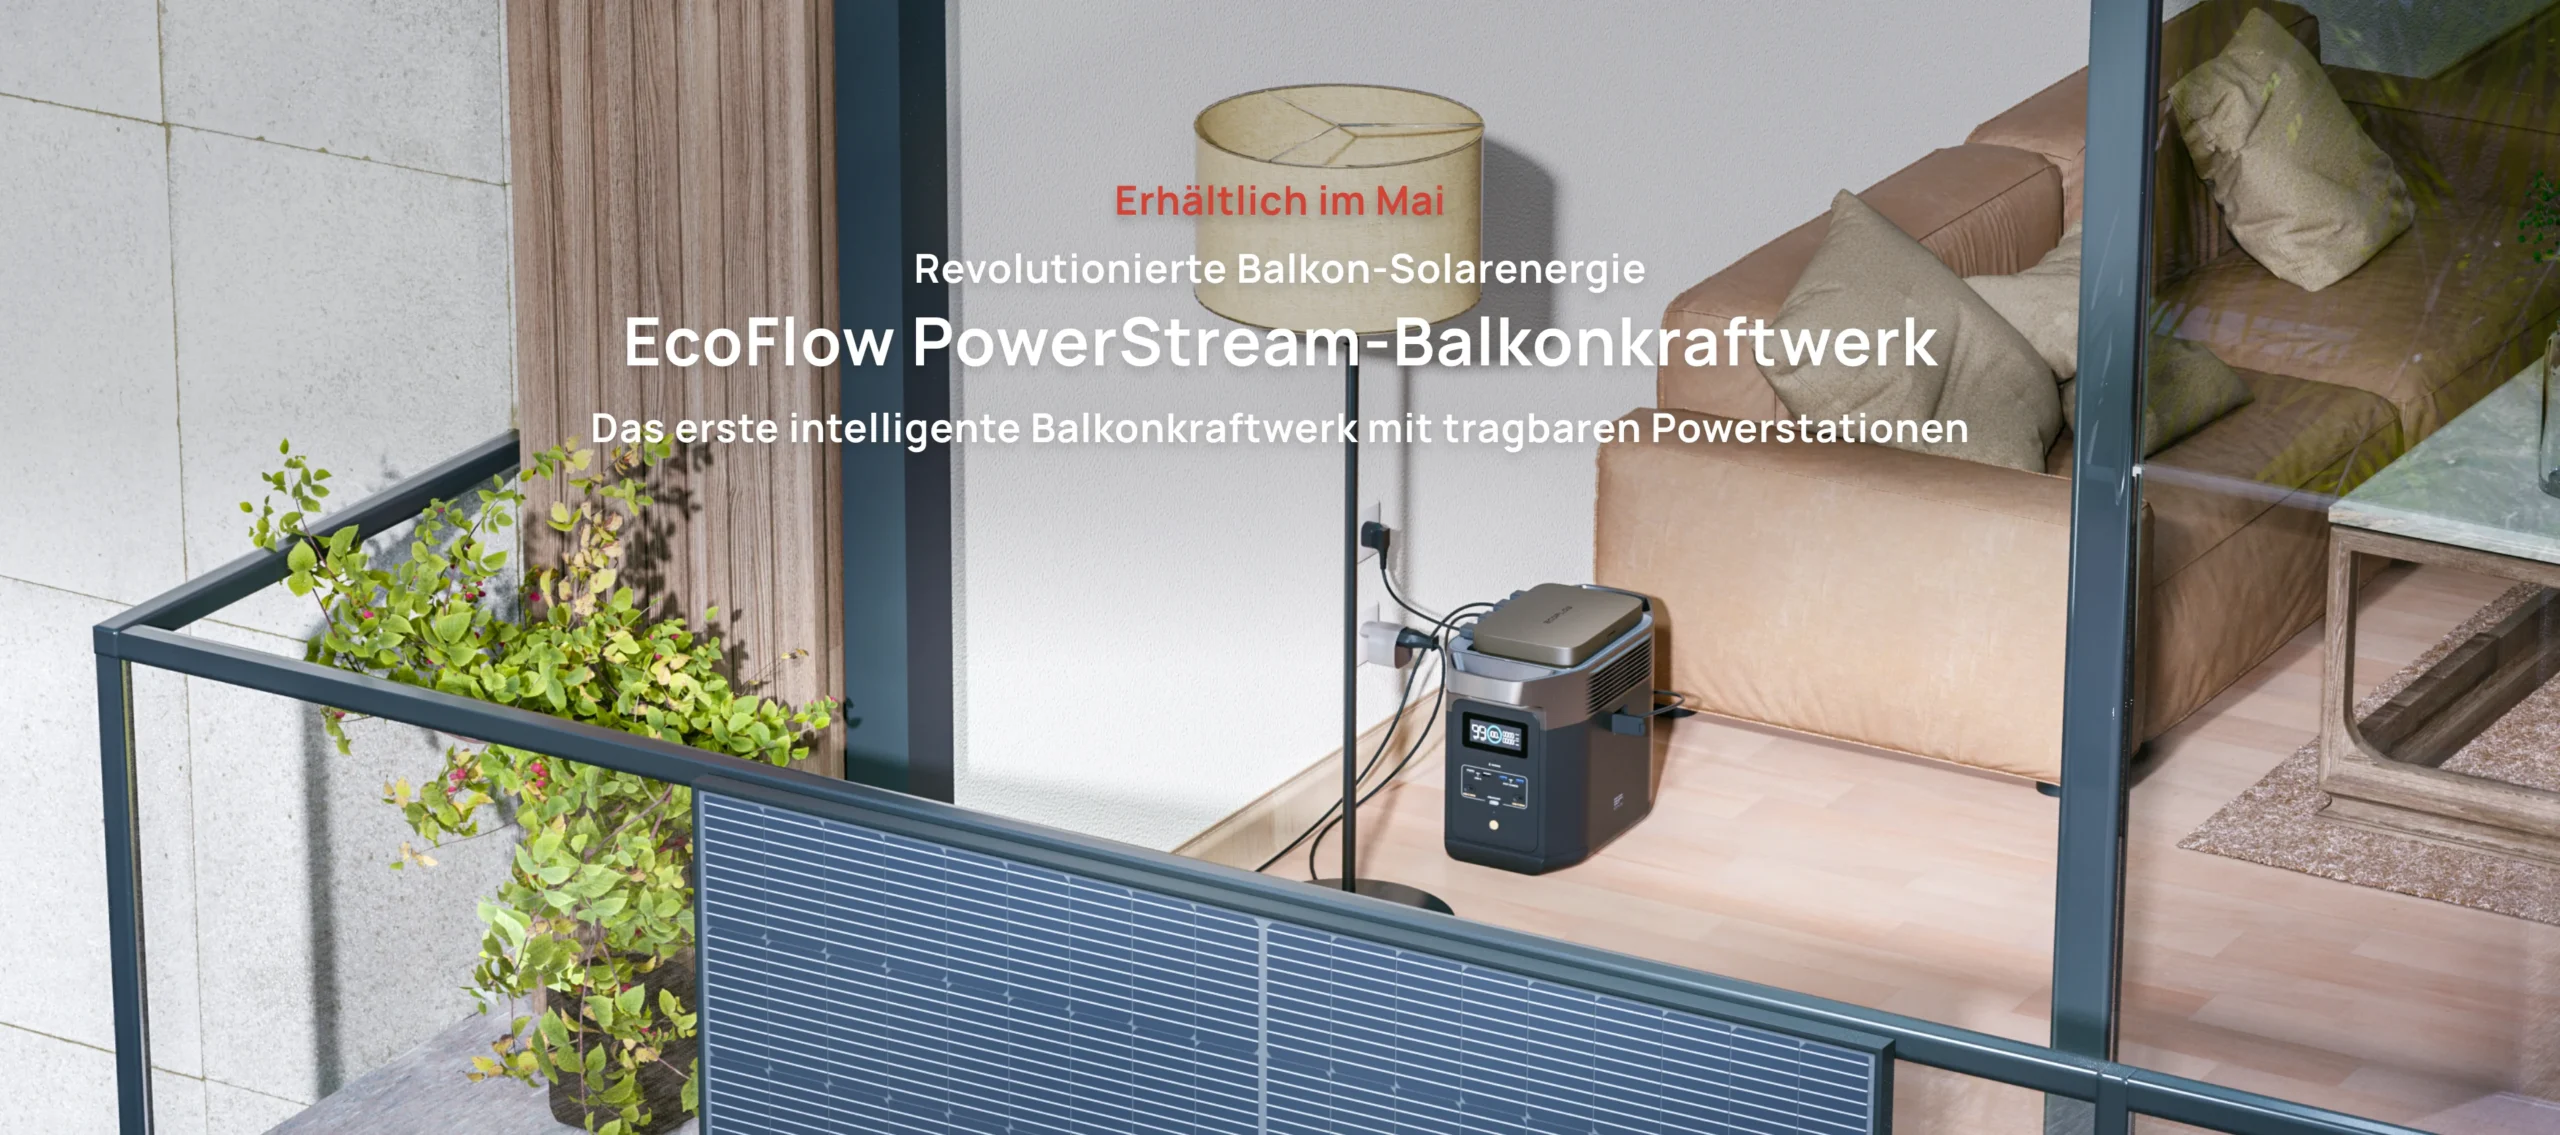 EcoFlow PowerStream – EcoFlow bringt Speicher-Lösung für Balkonkraftwerke auf den Markt